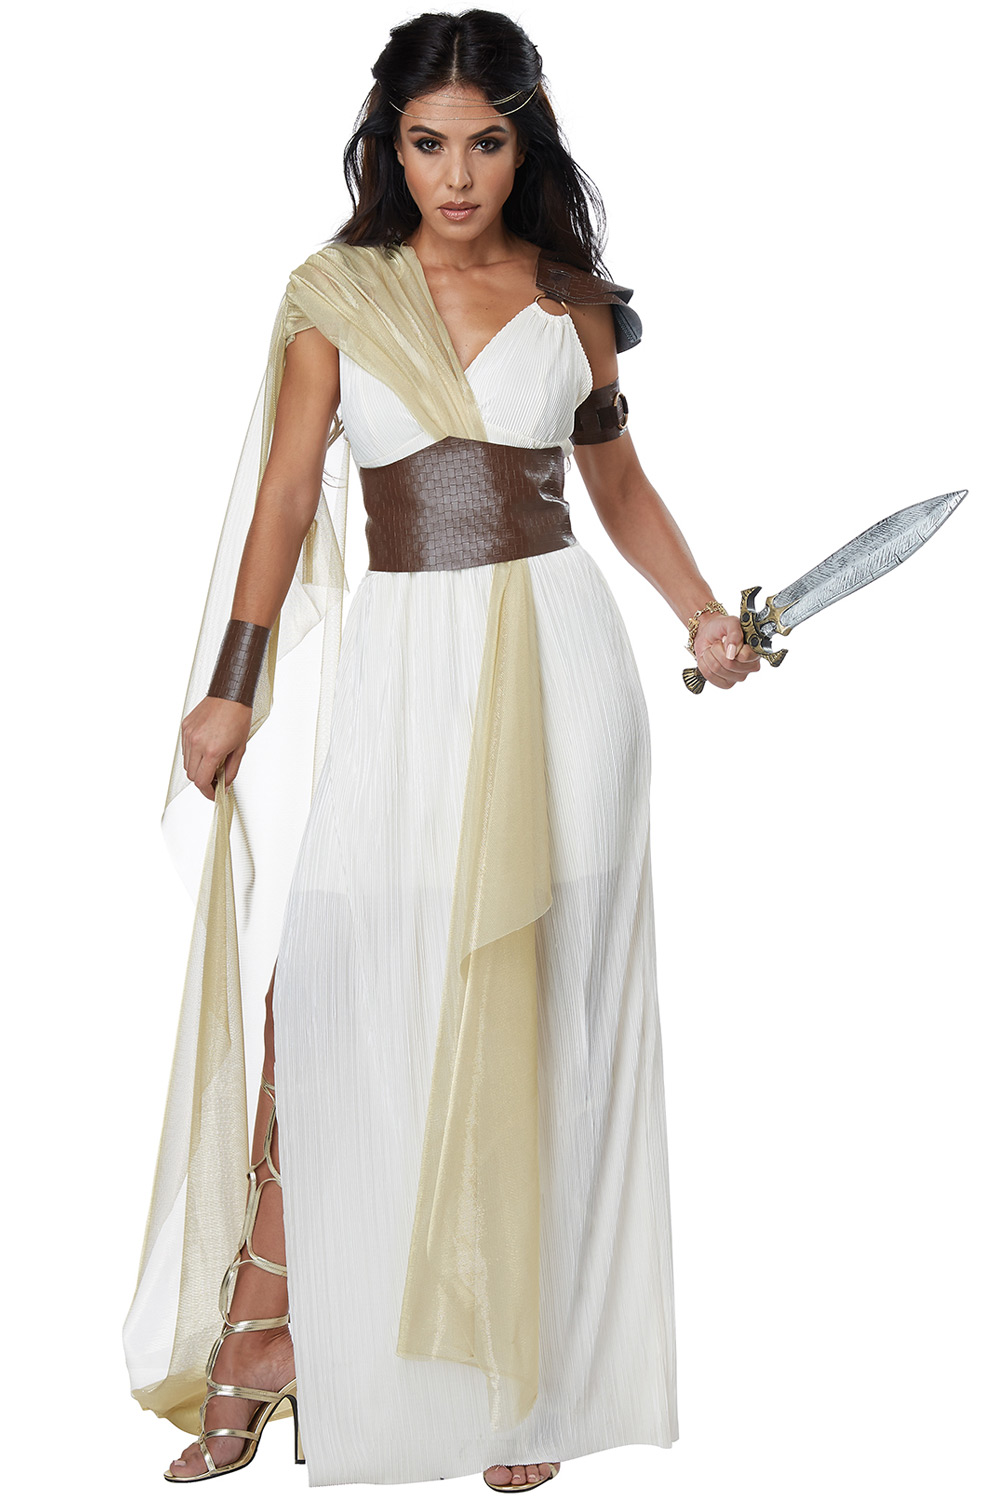 Womens spartan warrior costume